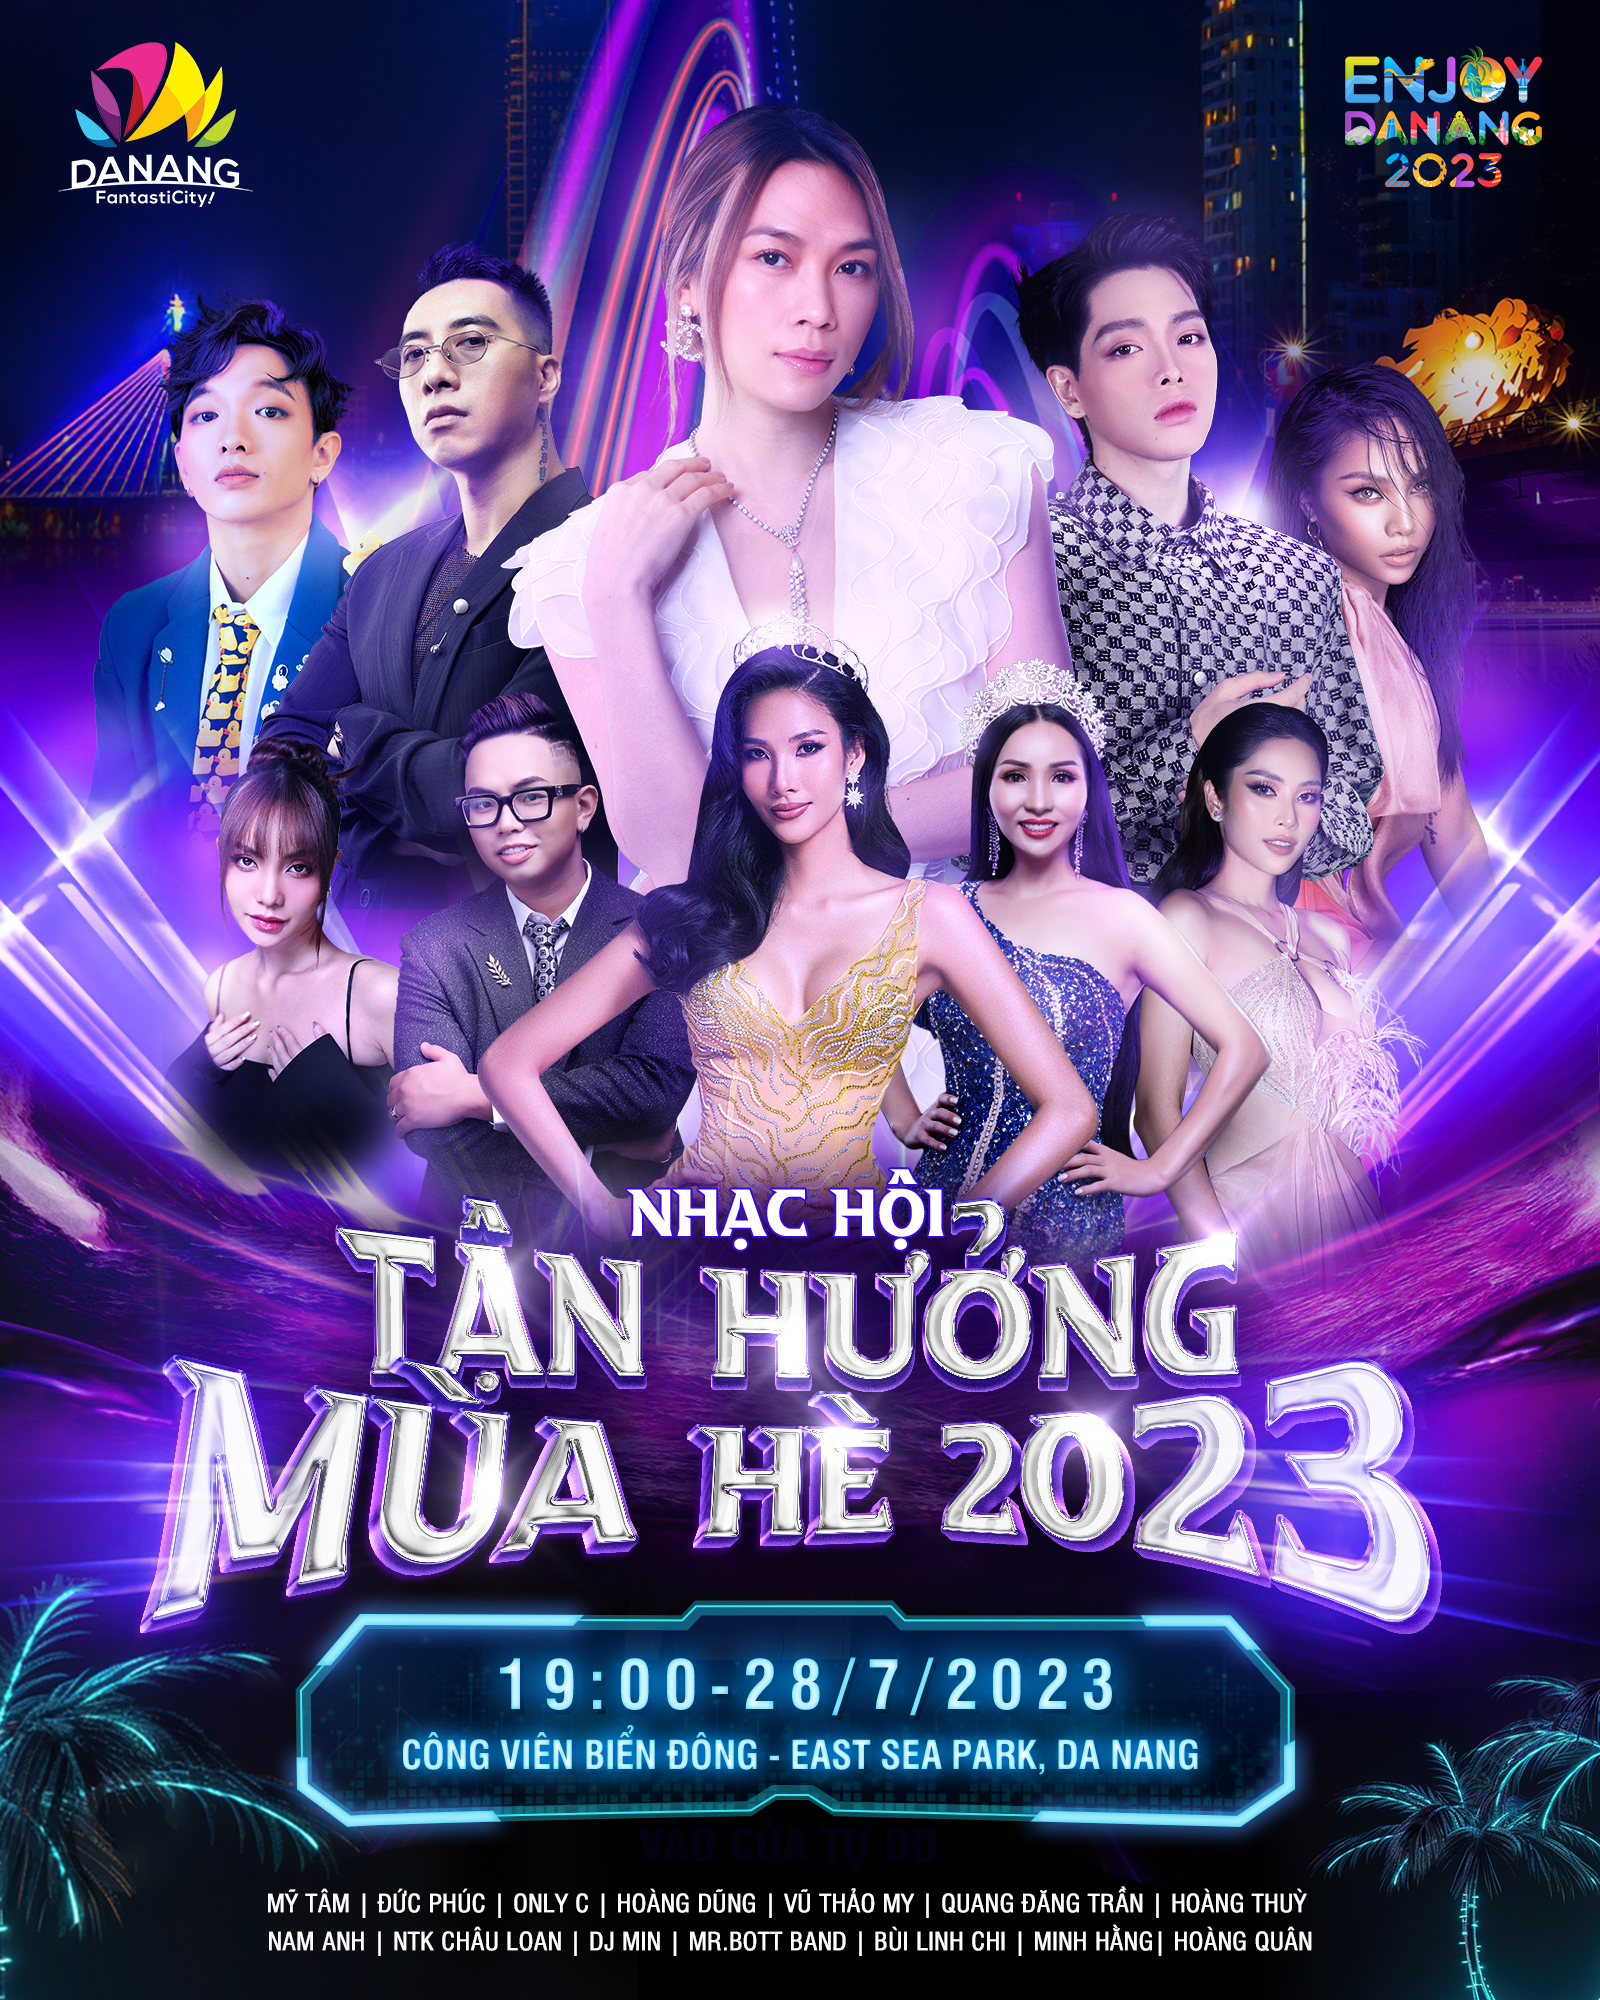 Lễ hội mùa hè Đà Nẵng 2023 